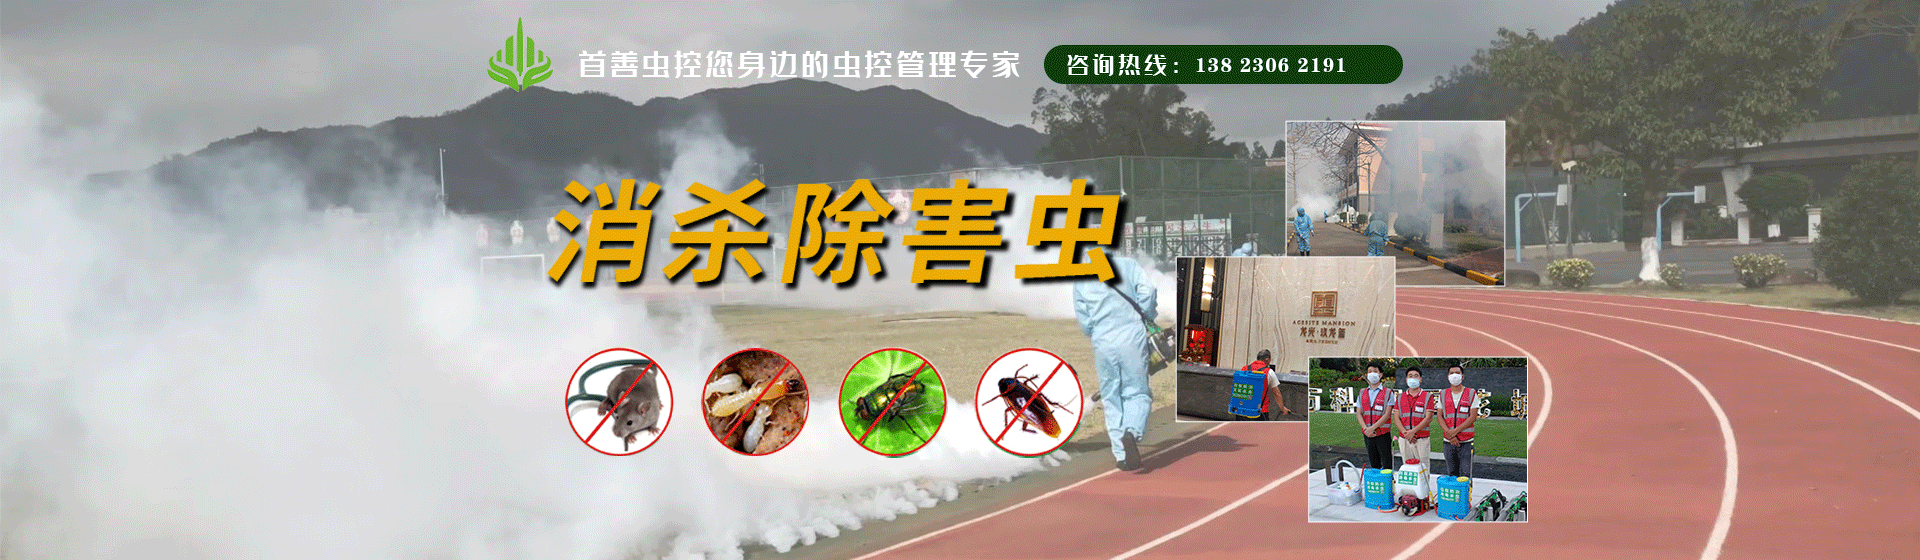 华发广场 - 杀虫服务案例 - 珠海市首善环境卫生服务有限公司